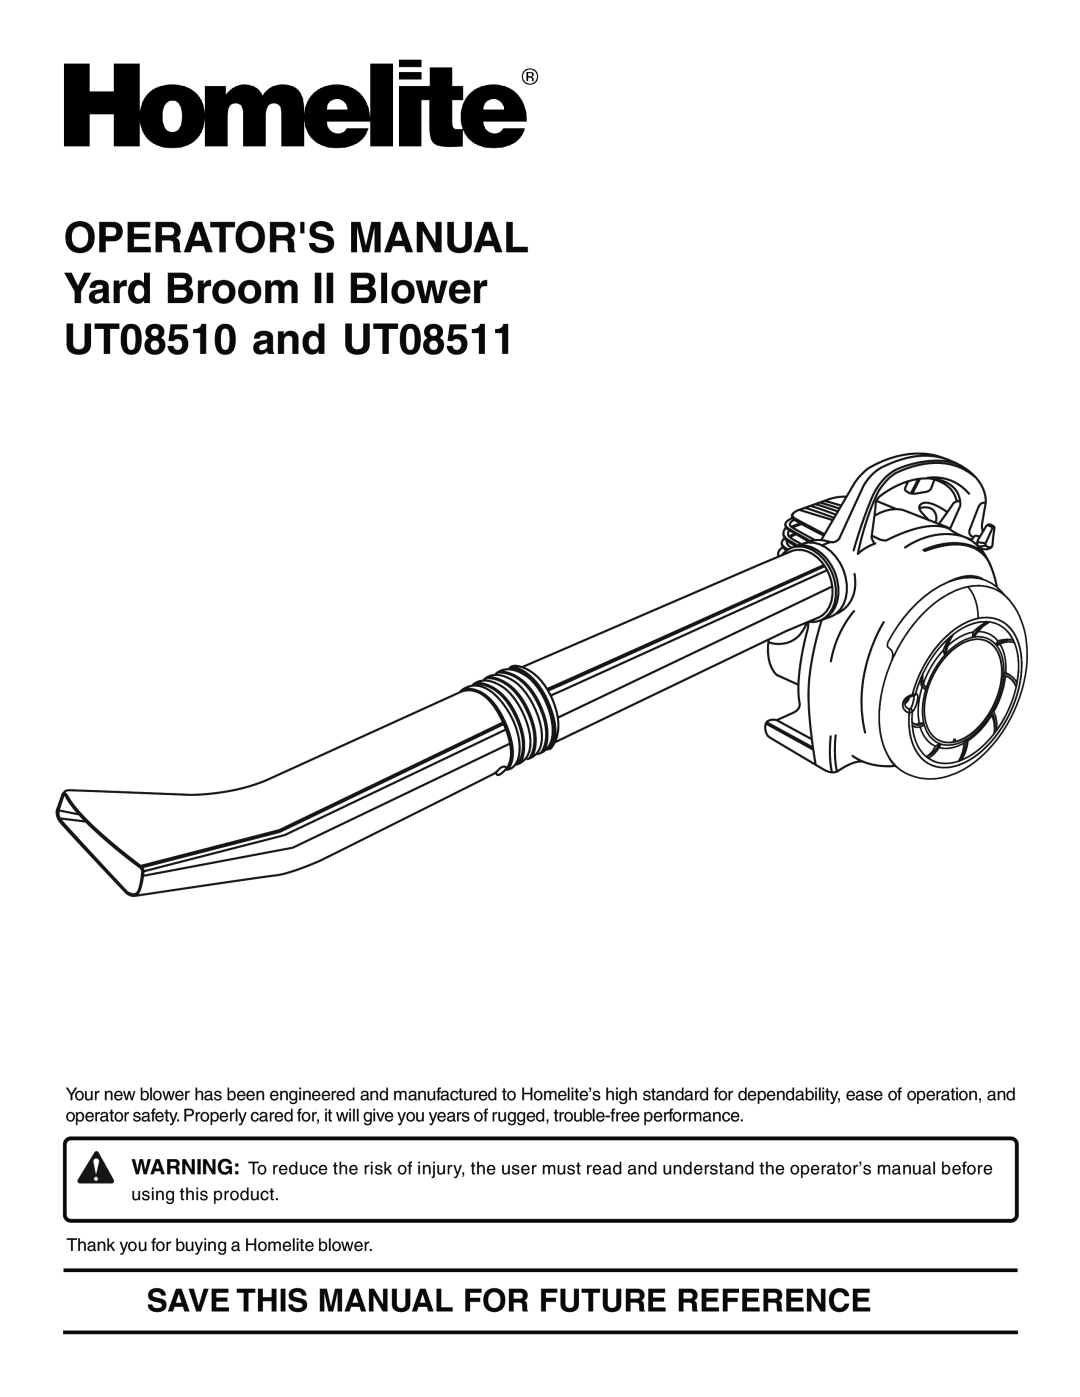 Homelite manual OPERATORS MANUAL Yard Broom II Blower UT08510 and UT08511, Save This Manual For Future Reference 